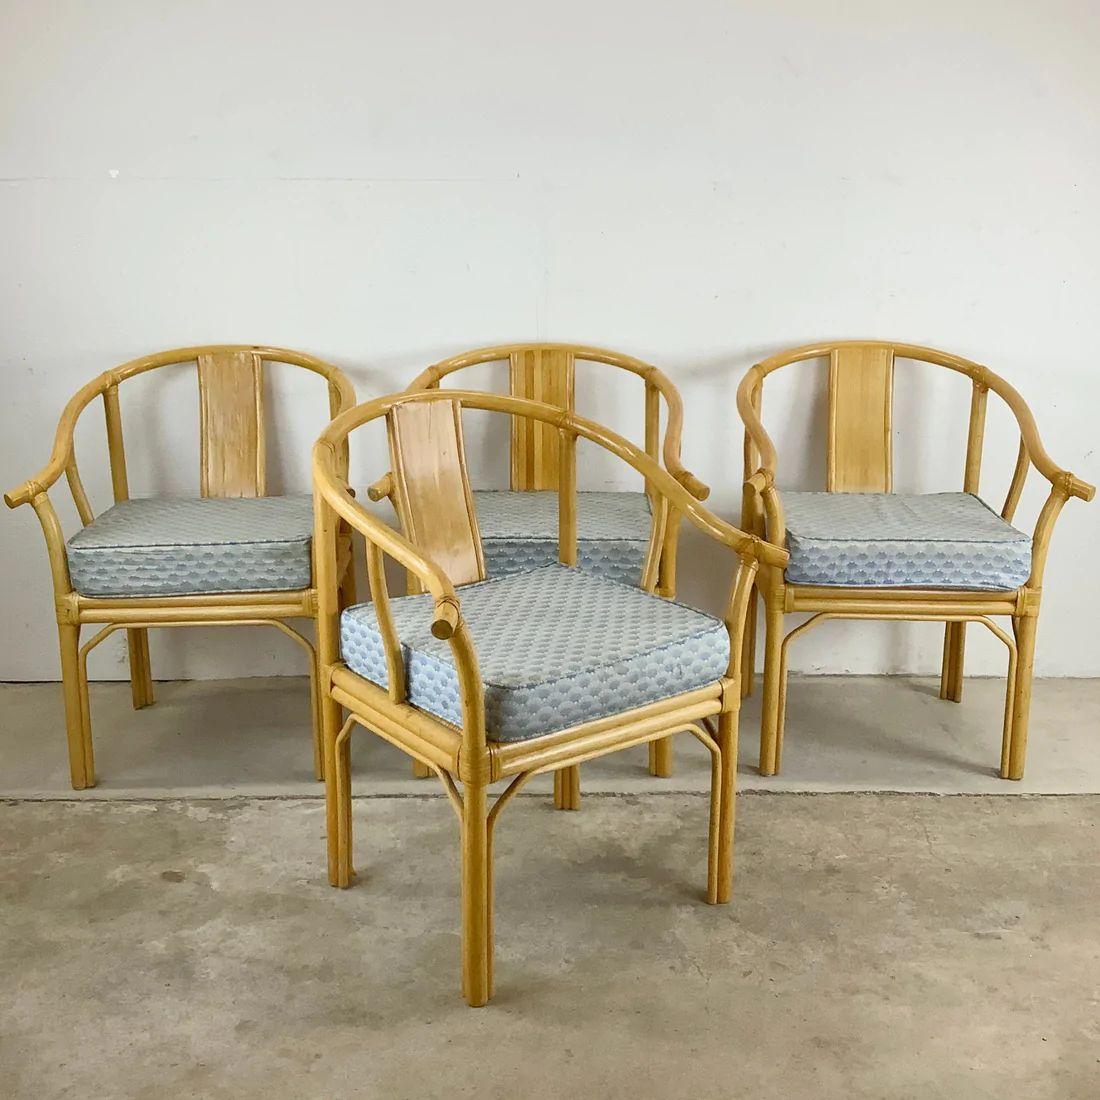 Cet ensemble robuste et élégant de quatre fauteuils modernes vintage se caractérise par des armatures en bambou, des assises en rotin et un design de style chinoiserie. Les proportions confortables et le design boho unique les rendent parfaits pour